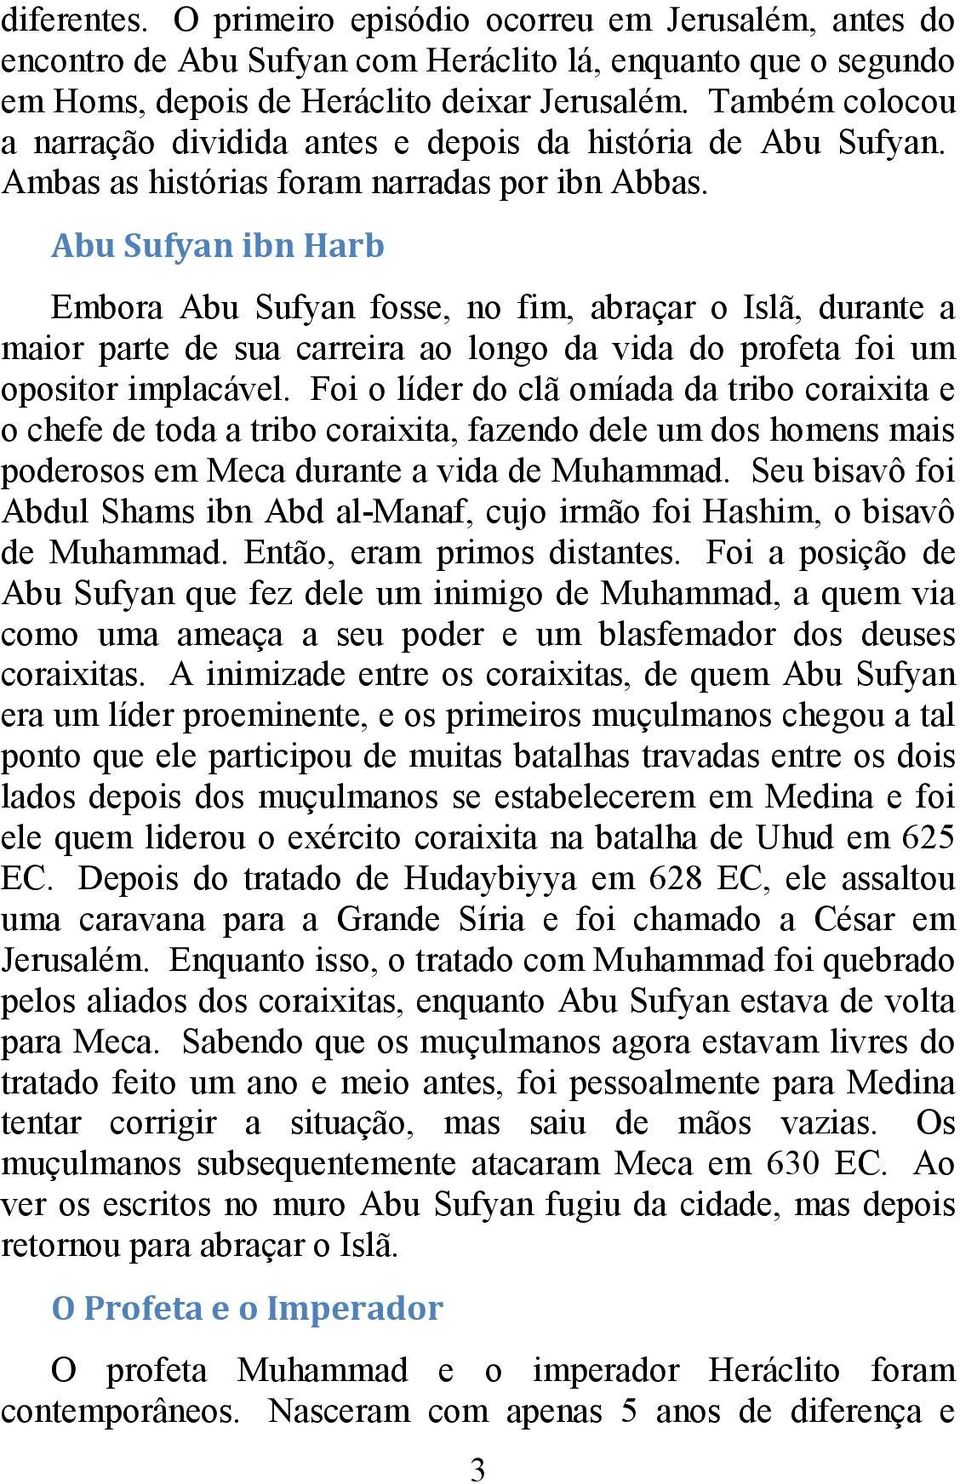 Abu Sufyan ibn Harb Embora Abu Sufyan fosse, no fim, abraçar o Islã, durante a maior parte de sua carreira ao longo da vida do profeta foi um opositor implacável.